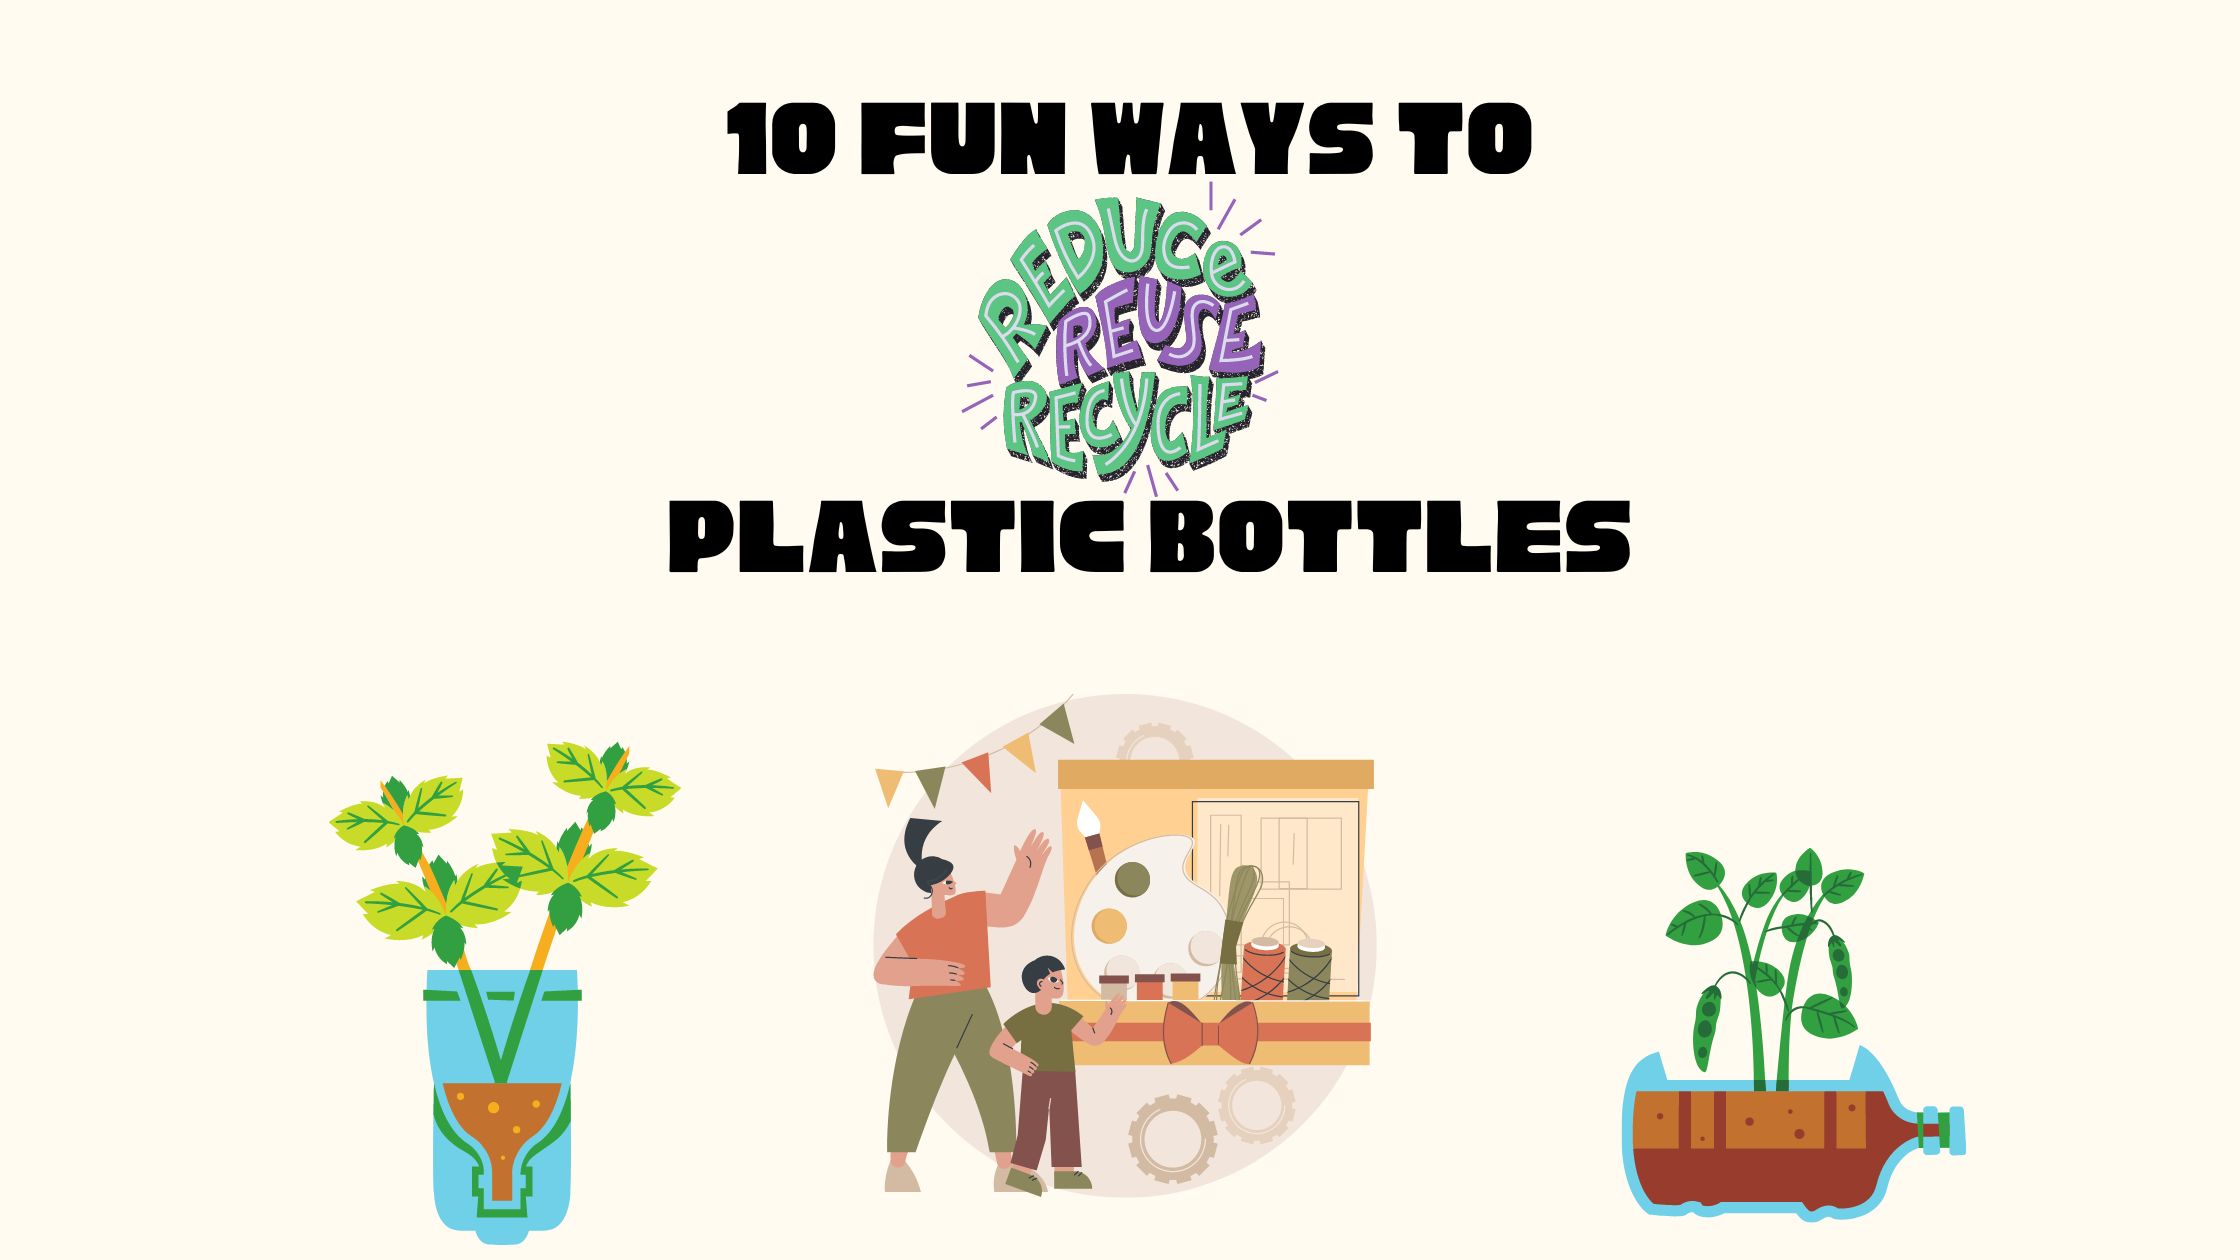 10 fun ways to reuse plastic bottles